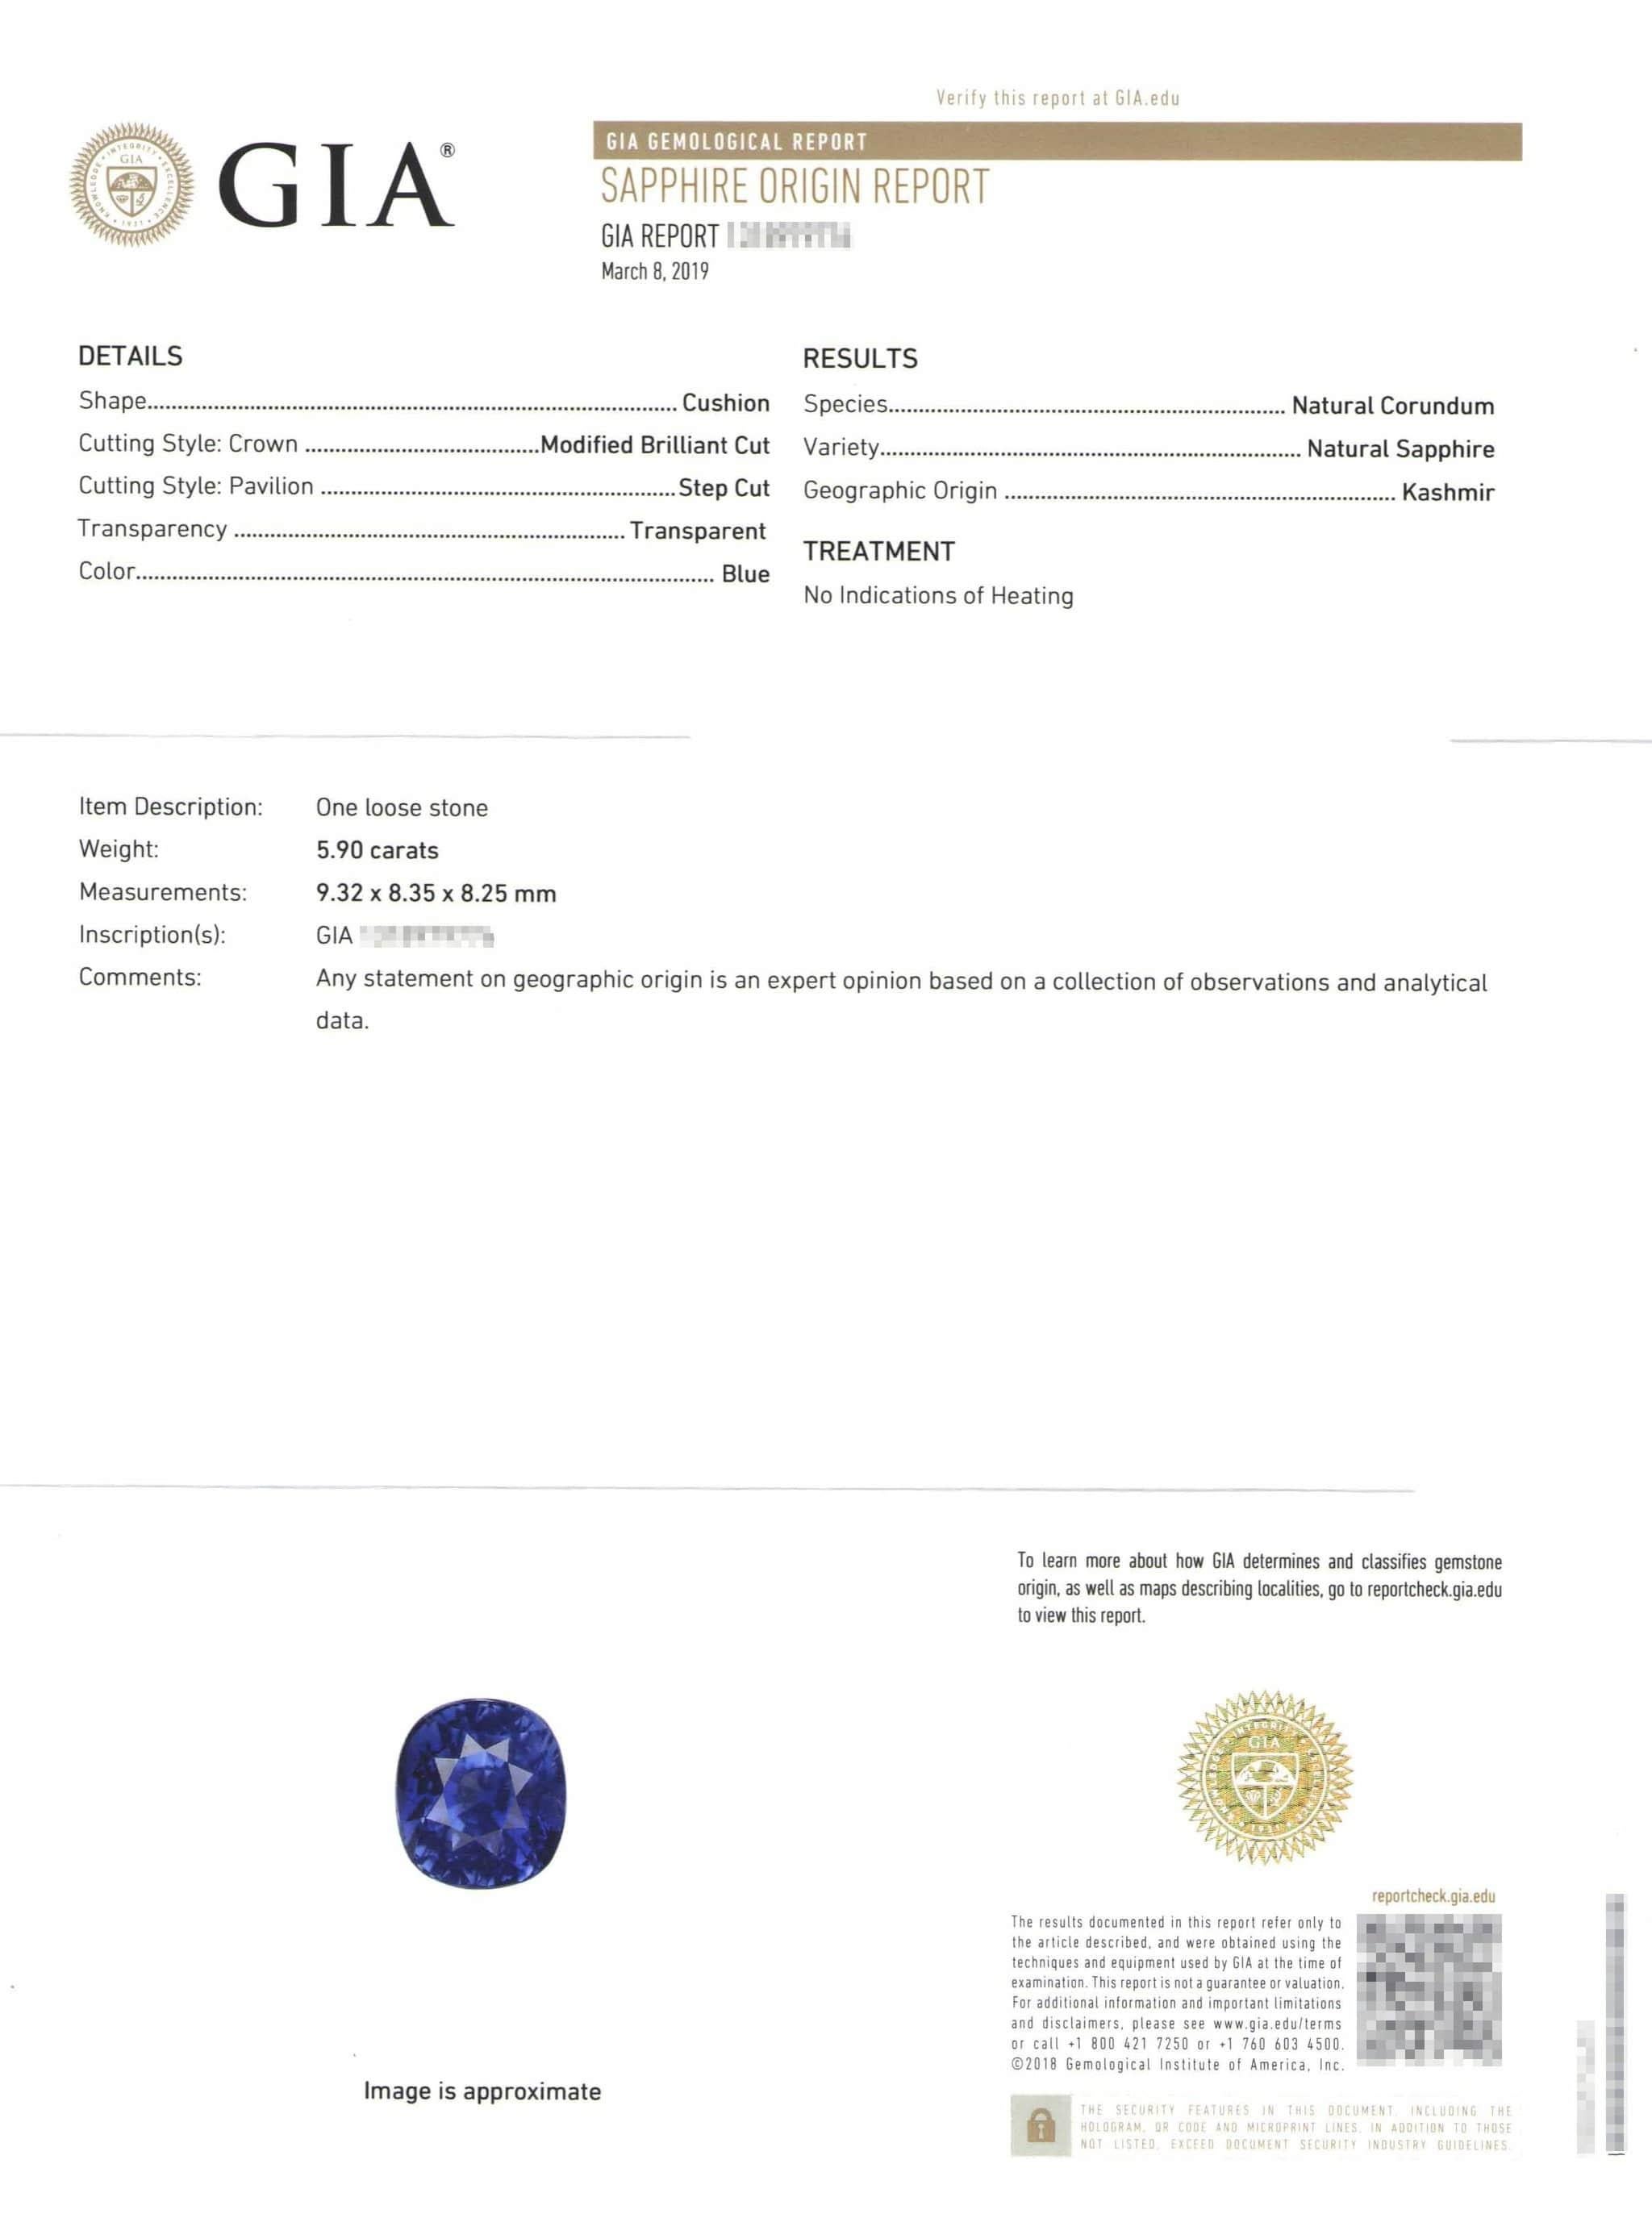 Taille coussin Exceptionnelle bague avec saphir bleu du Cachemire certifié GIA de 5,90 carats et diamants en vente